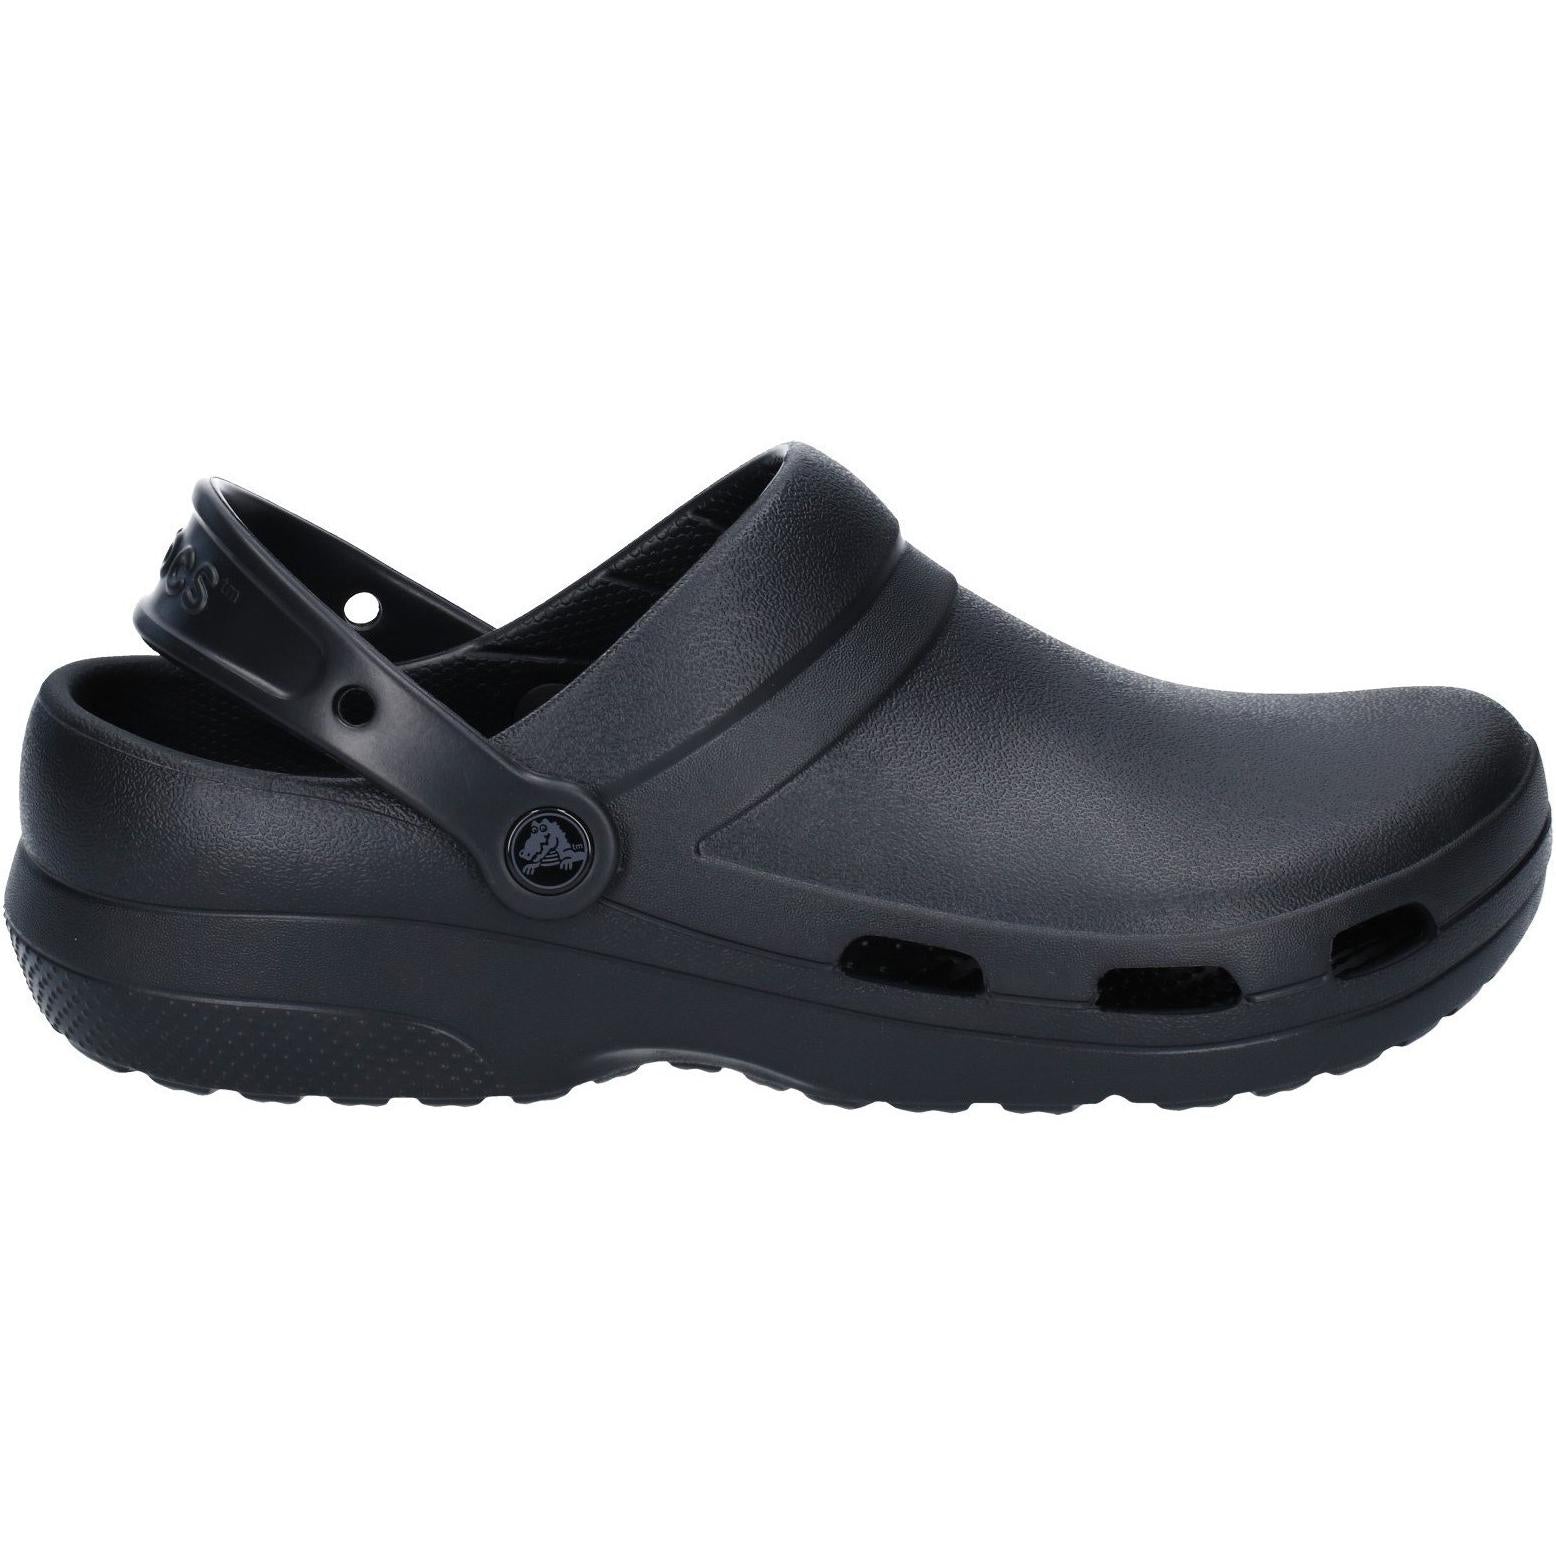 Crocs Specialist ll Vent Clog Shoes